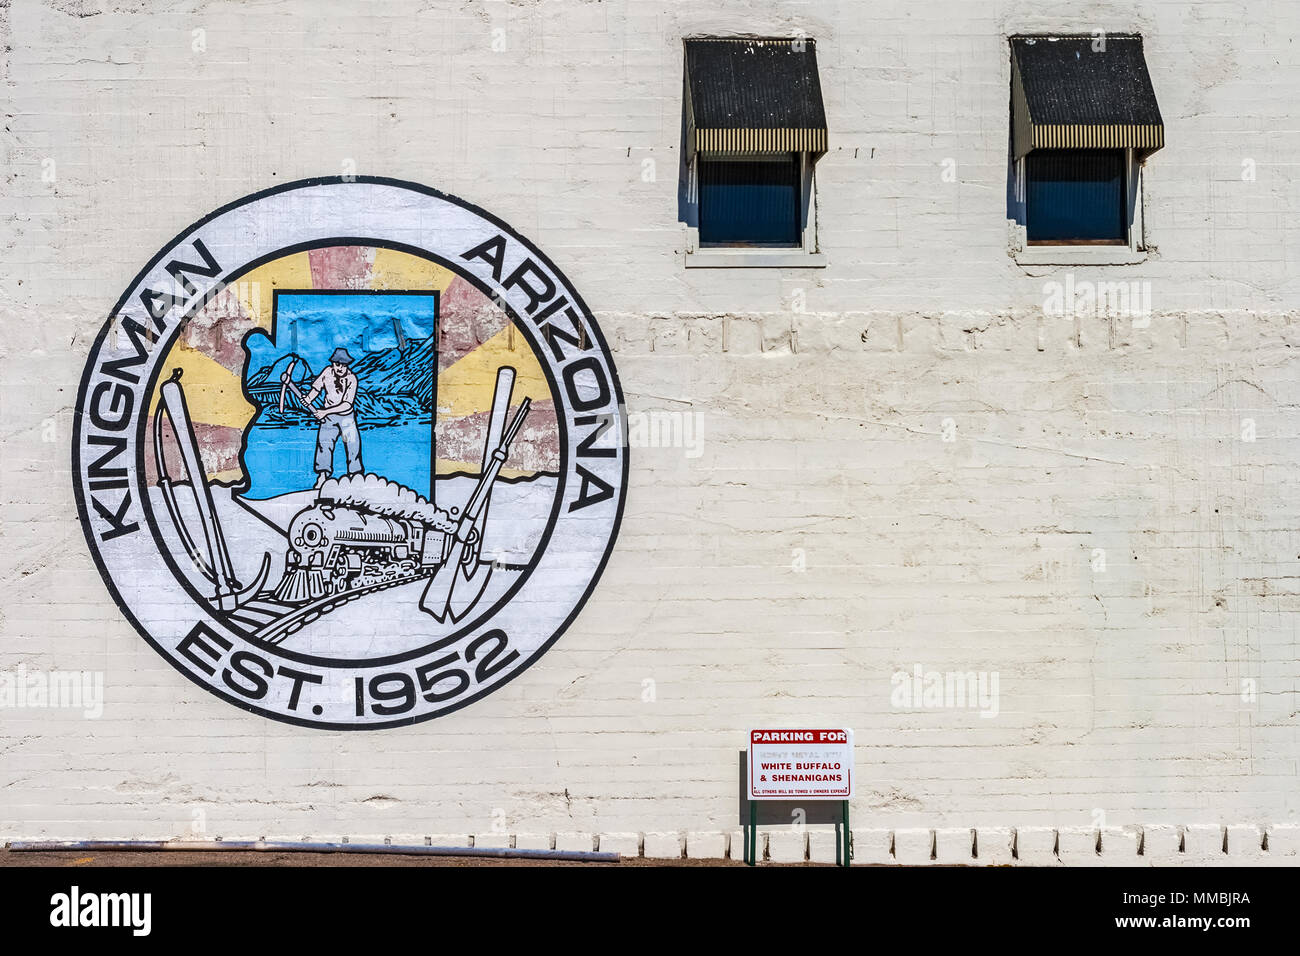 Peinture murale conçue logo de la ville de Kingman, Arizona, peint sur un mur de brique de l'édifice Gruninger. Banque D'Images